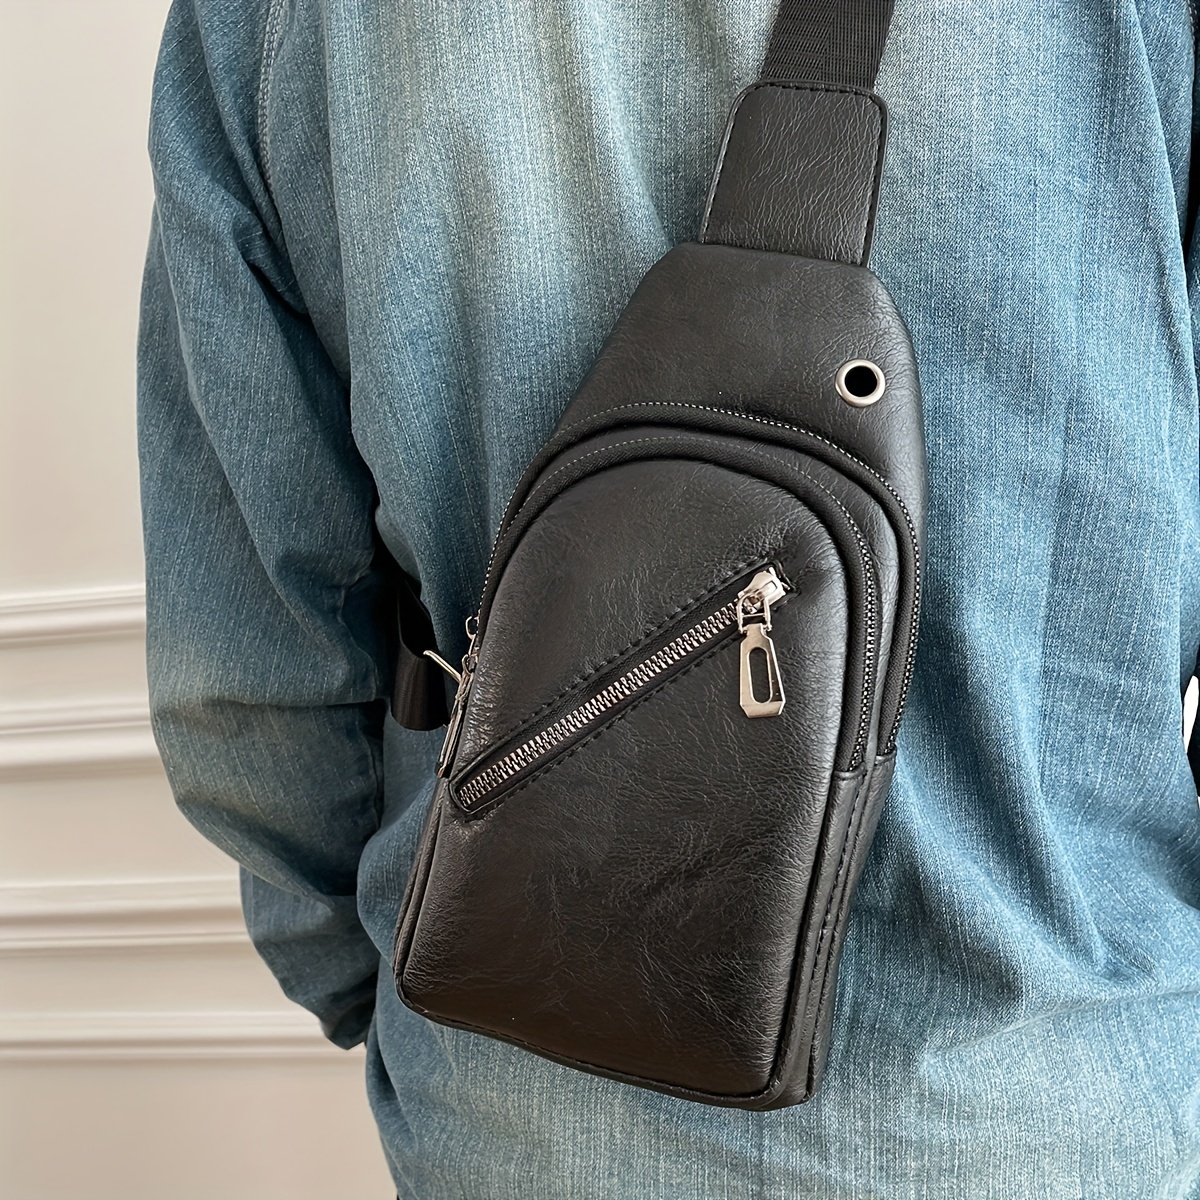 Men's Designer Crossbody & Messenger Bags